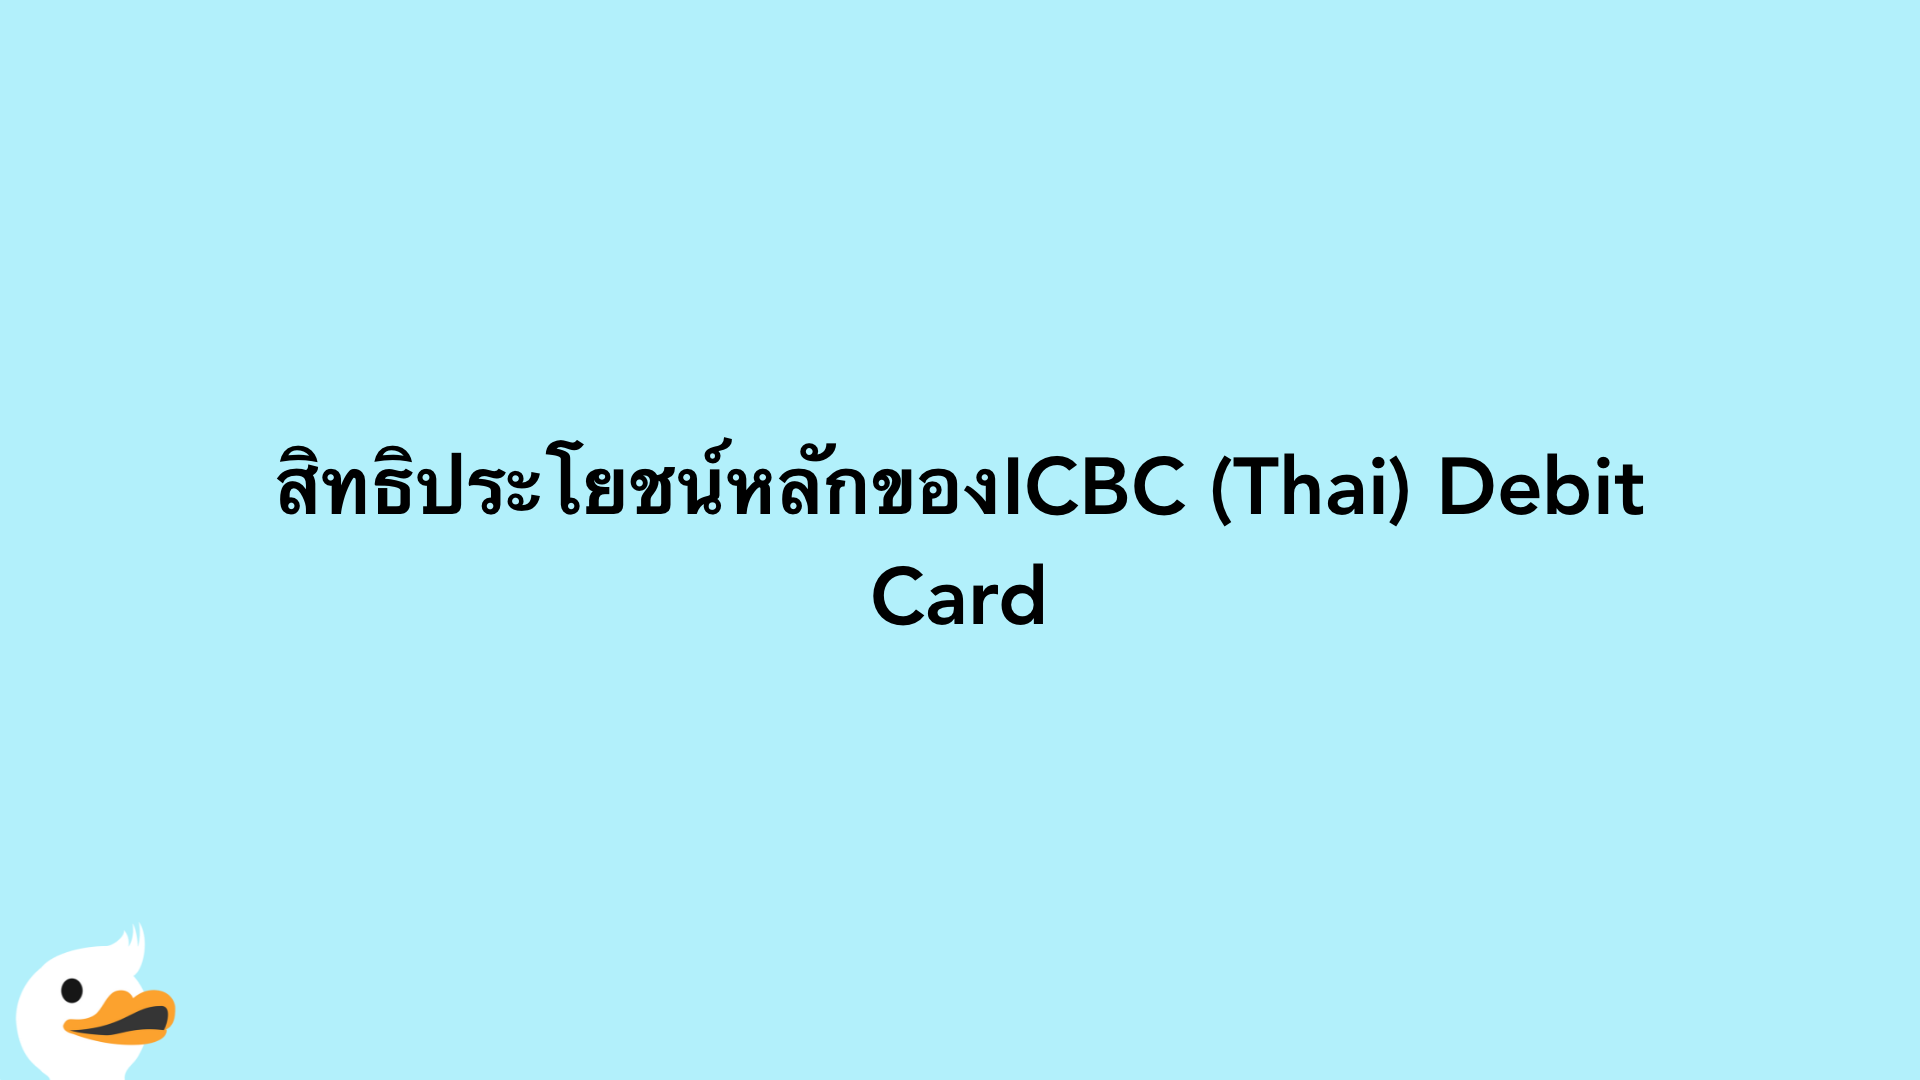 สิทธิประโยชน์หลักของICBC (Thai) Debit Card